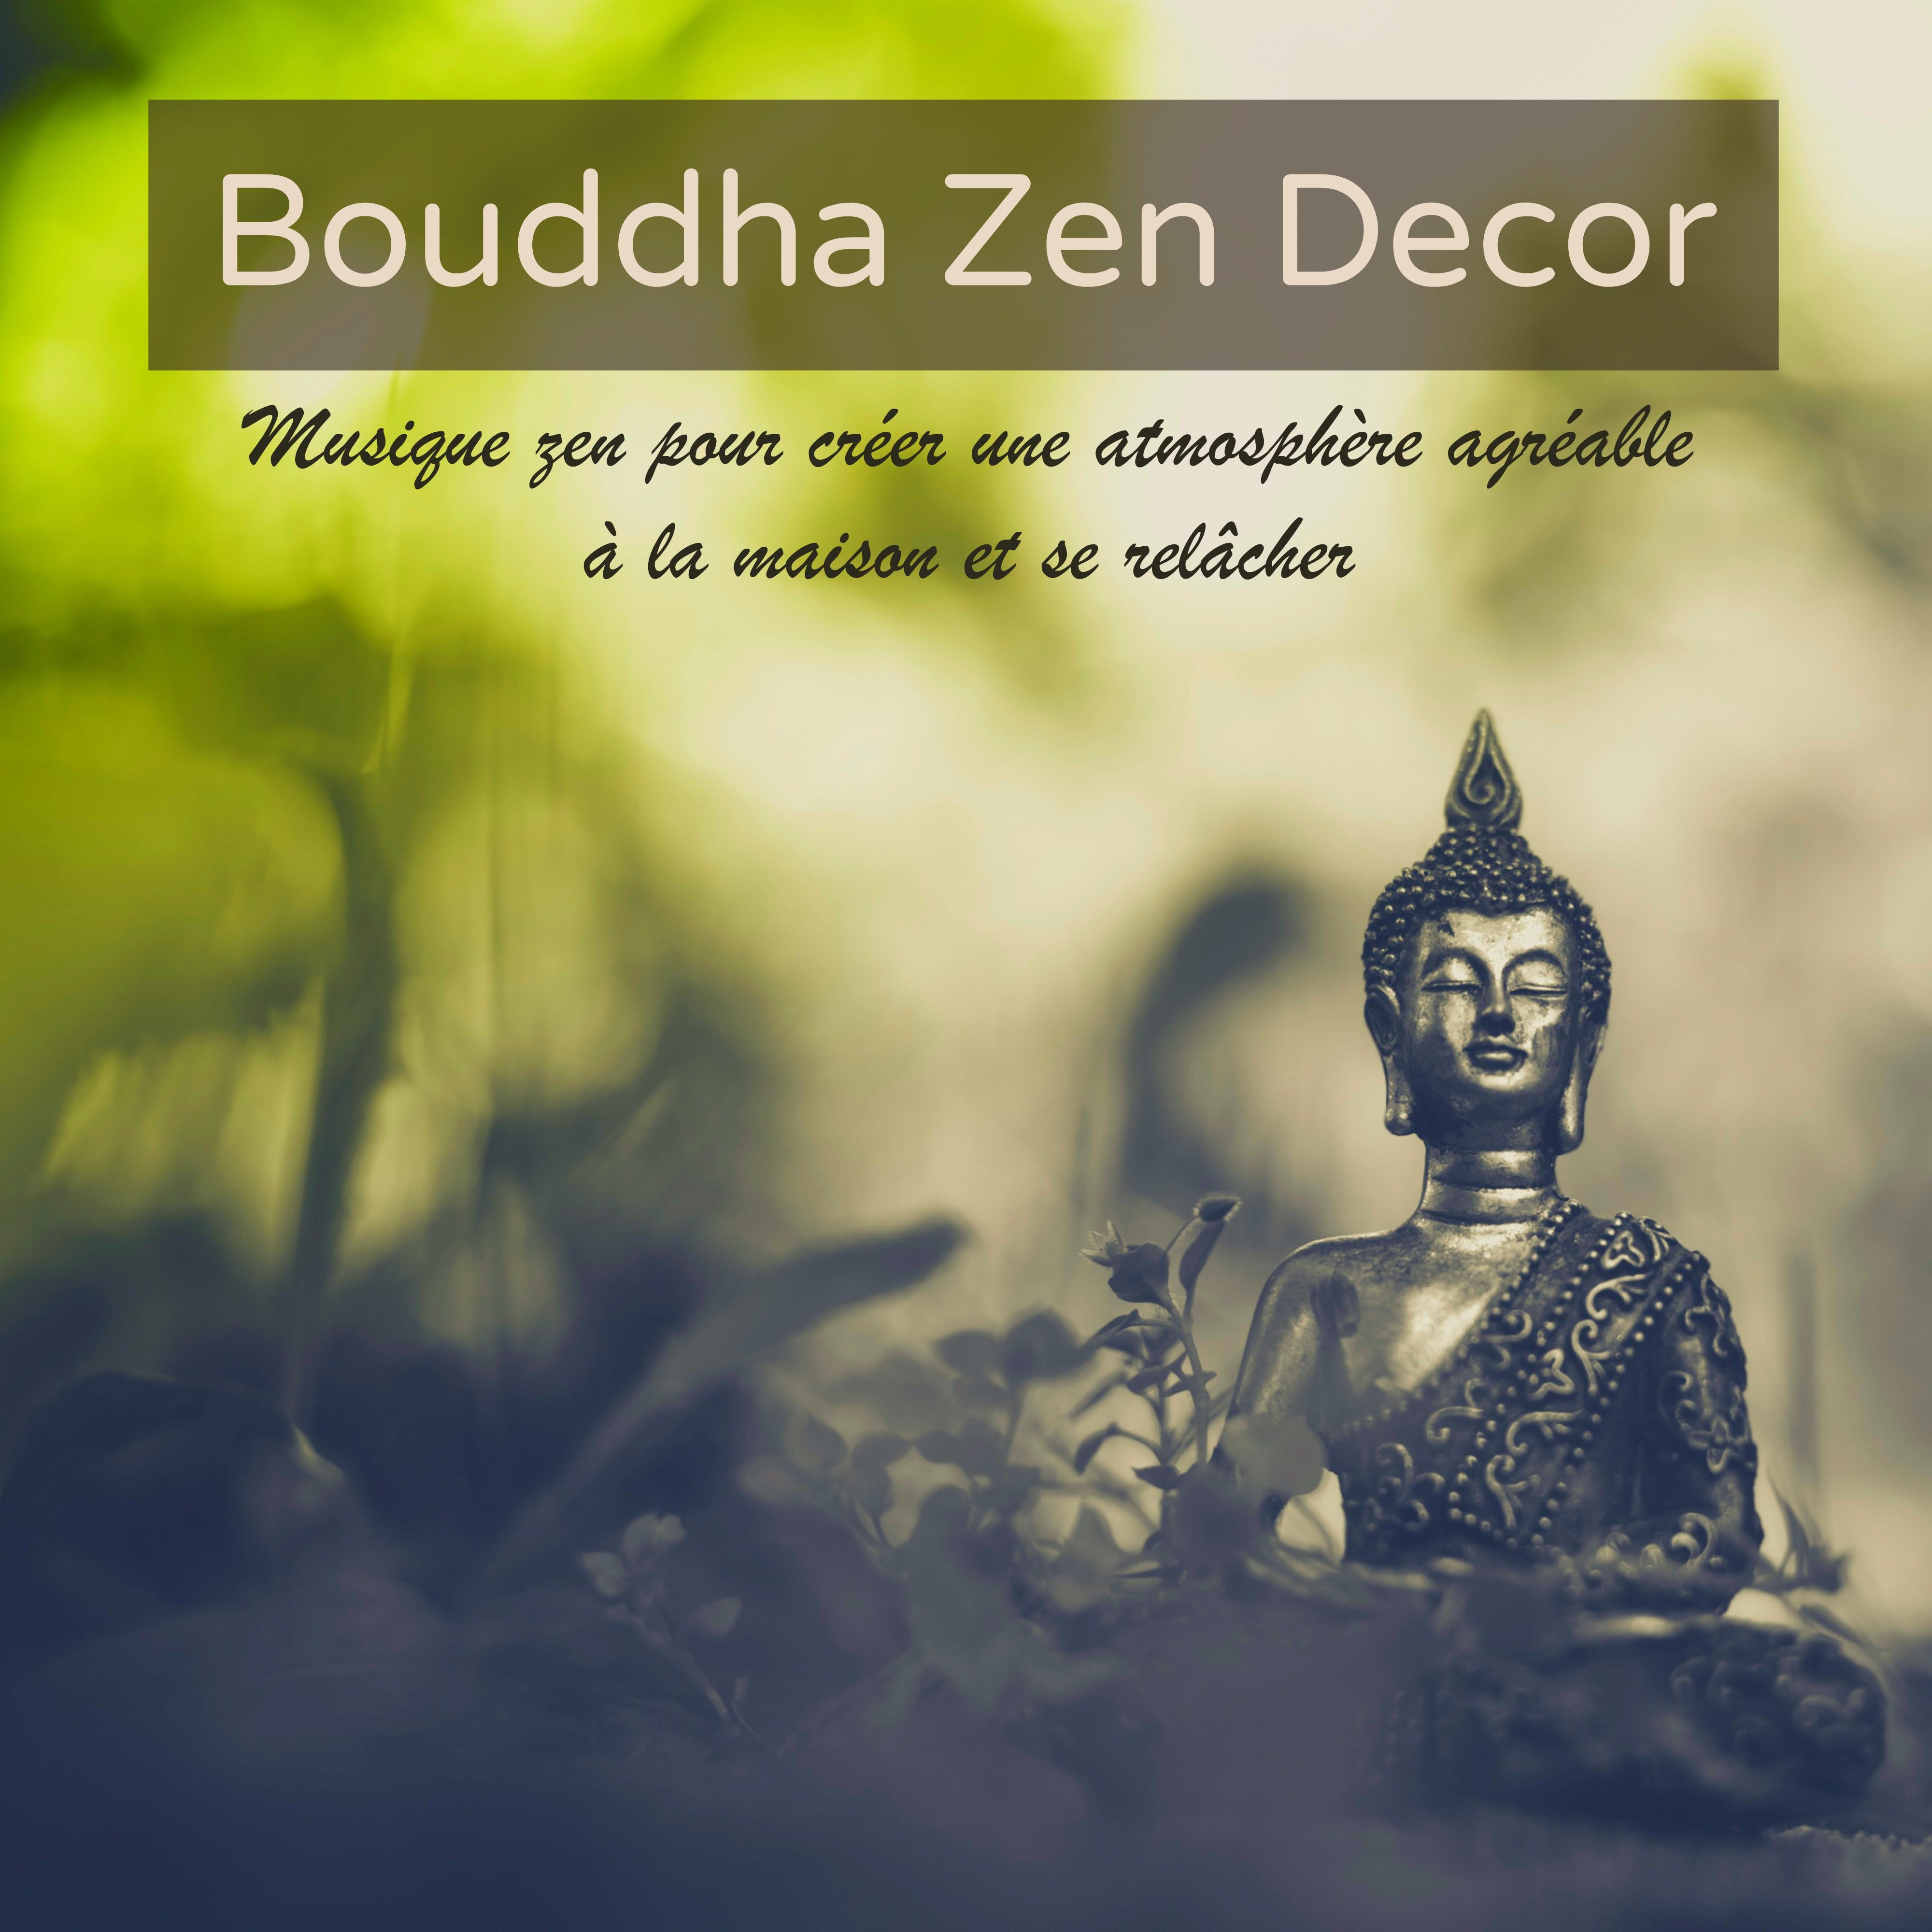 Bouddha Zen Decor – Musique zen pour créer une atmosphère agréable à la maison et se relâcher